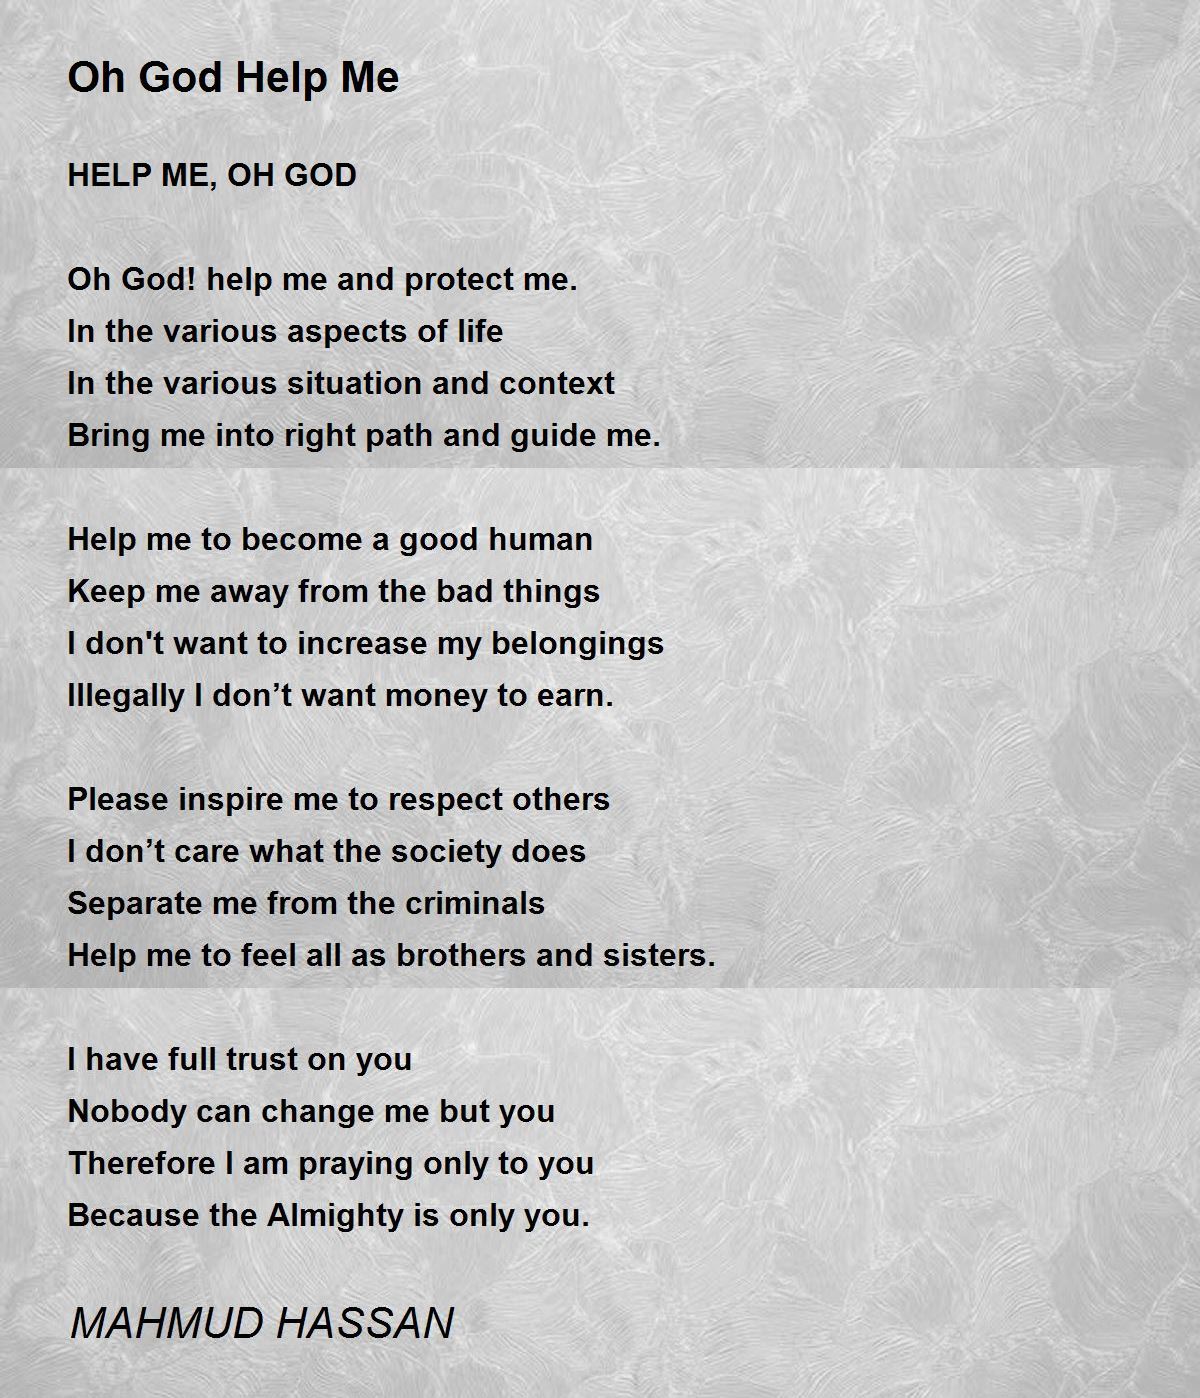 Oh God Help Me - Oh God Help Me Poem by MAHMUD HASSAN